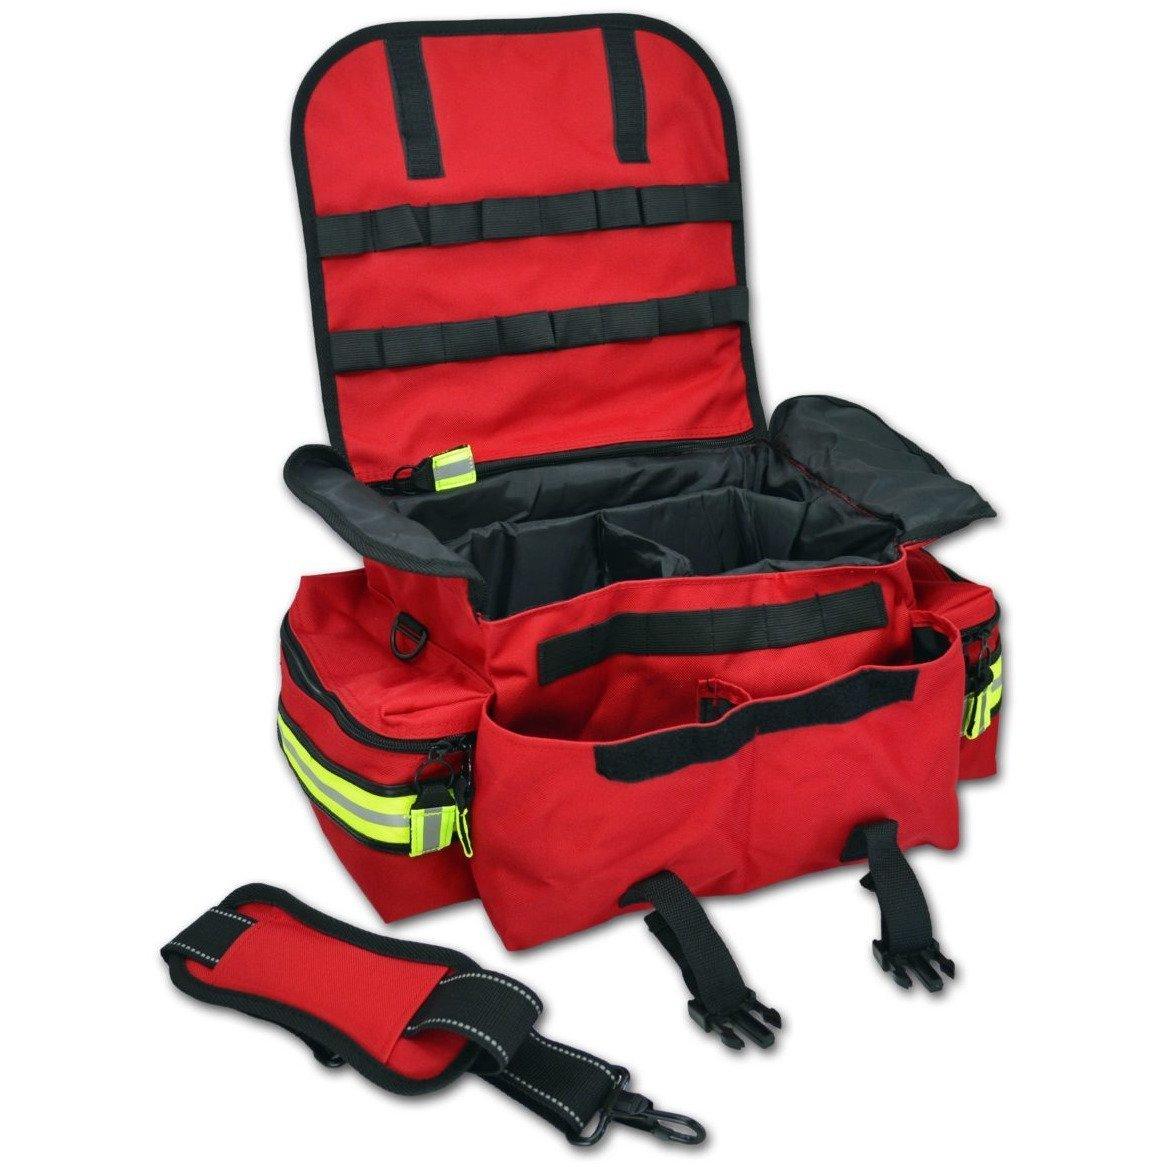 MEDIC-X EMT First Responder Bag - Vendor